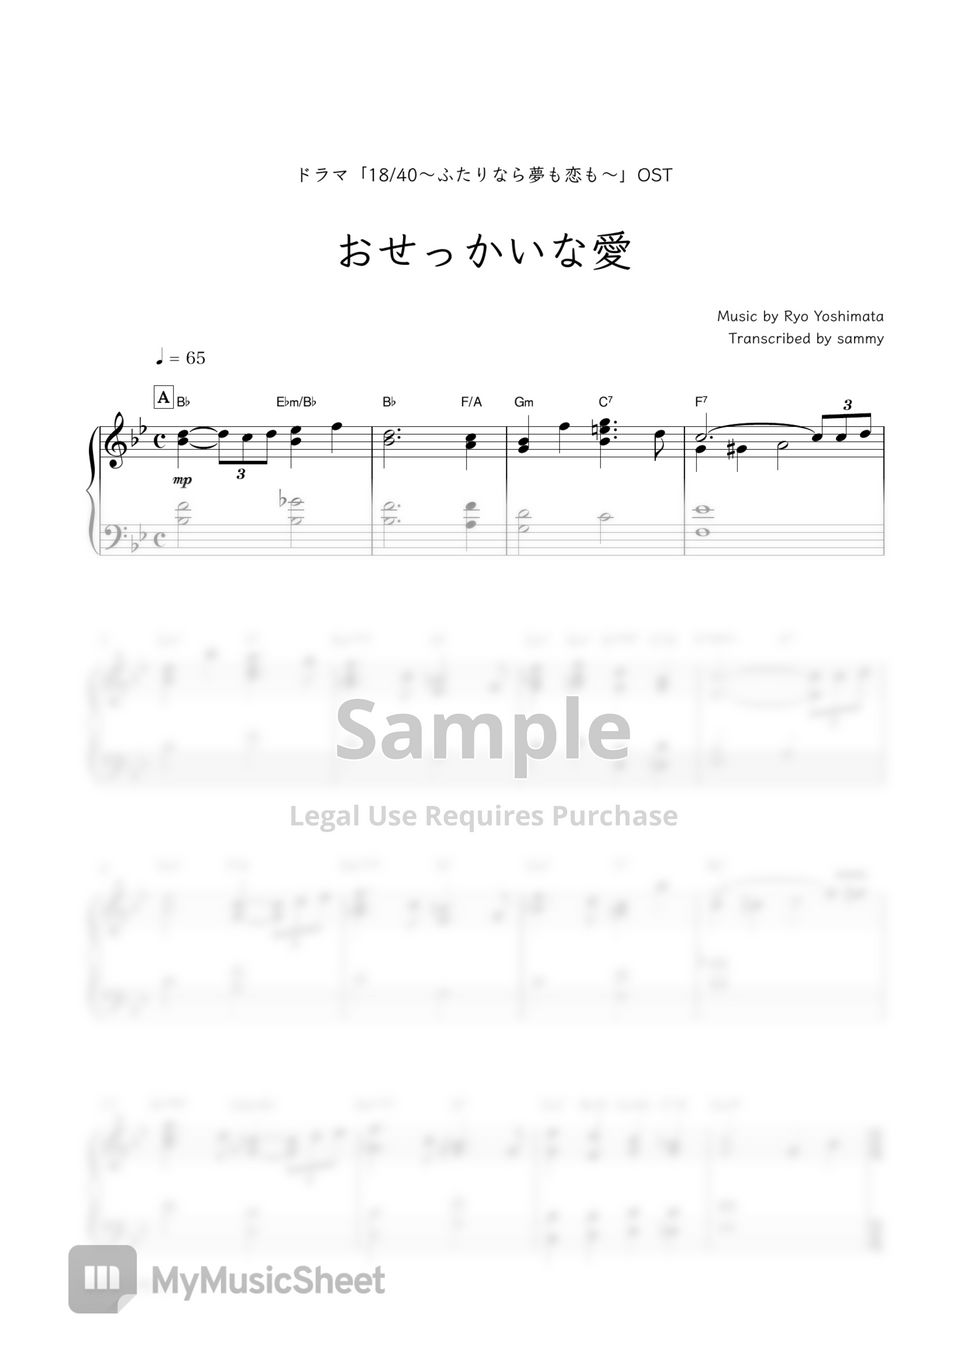 ドラマ『18/40〜ふたりなら夢も恋も〜』OST - Osekkai Na Ai (おせっかいな愛) by sammy